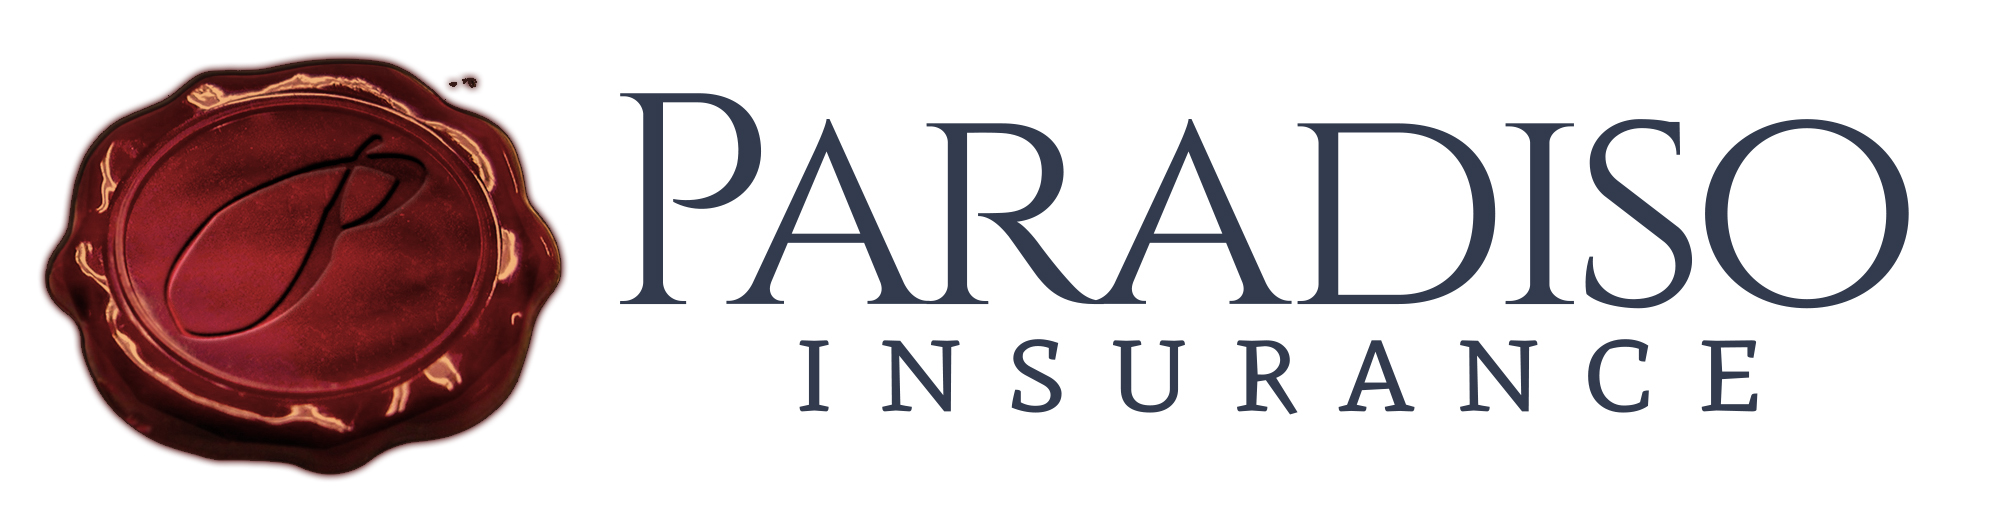 Paradiso Insurance Icon